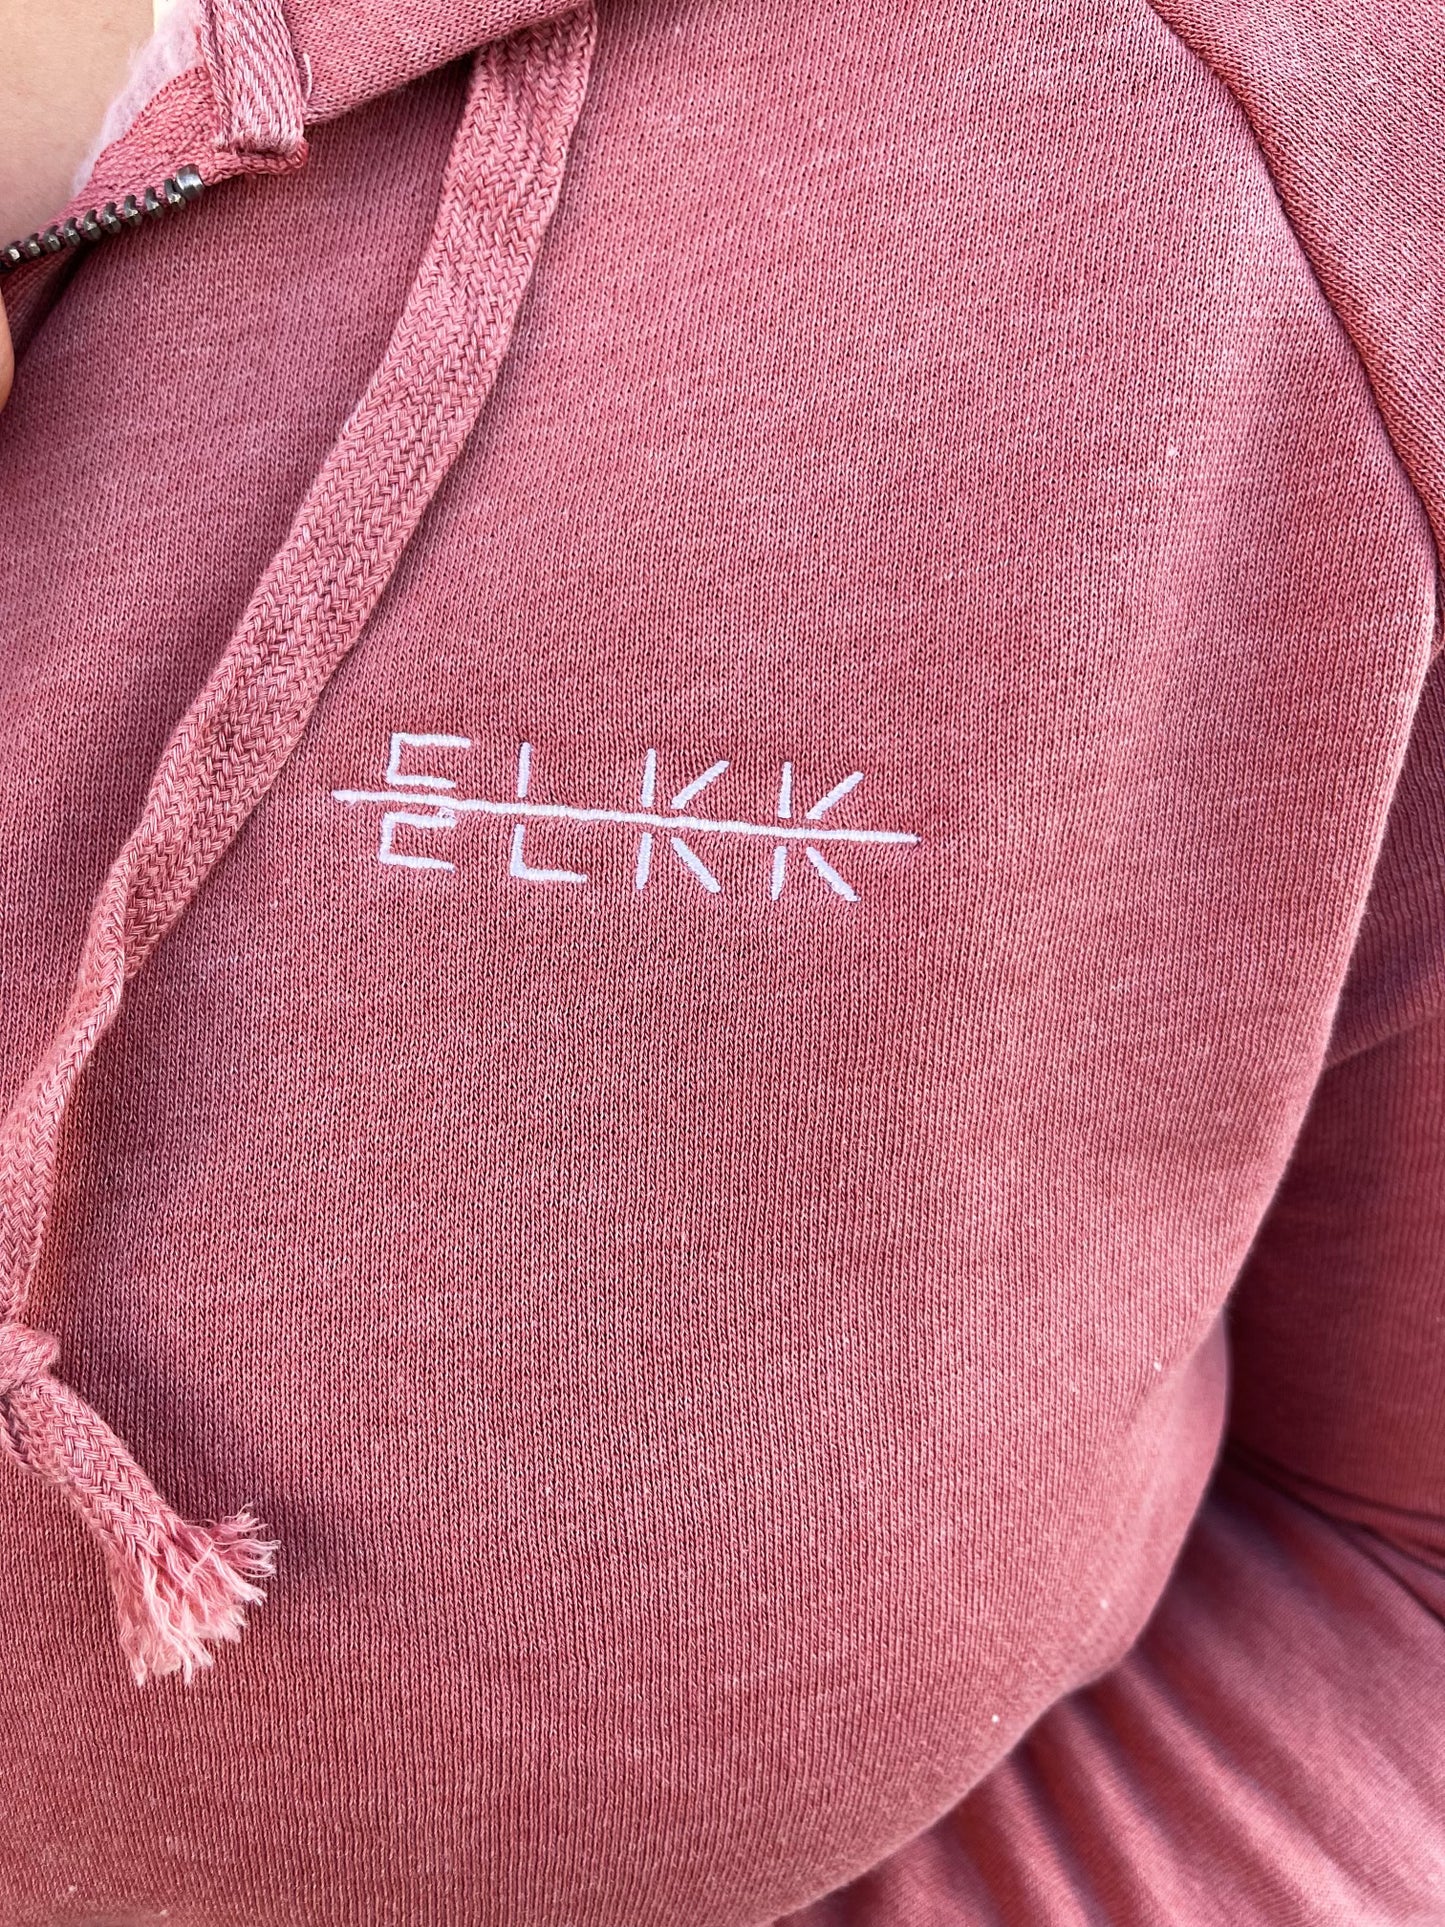 ELKK embroidered zip up jacket